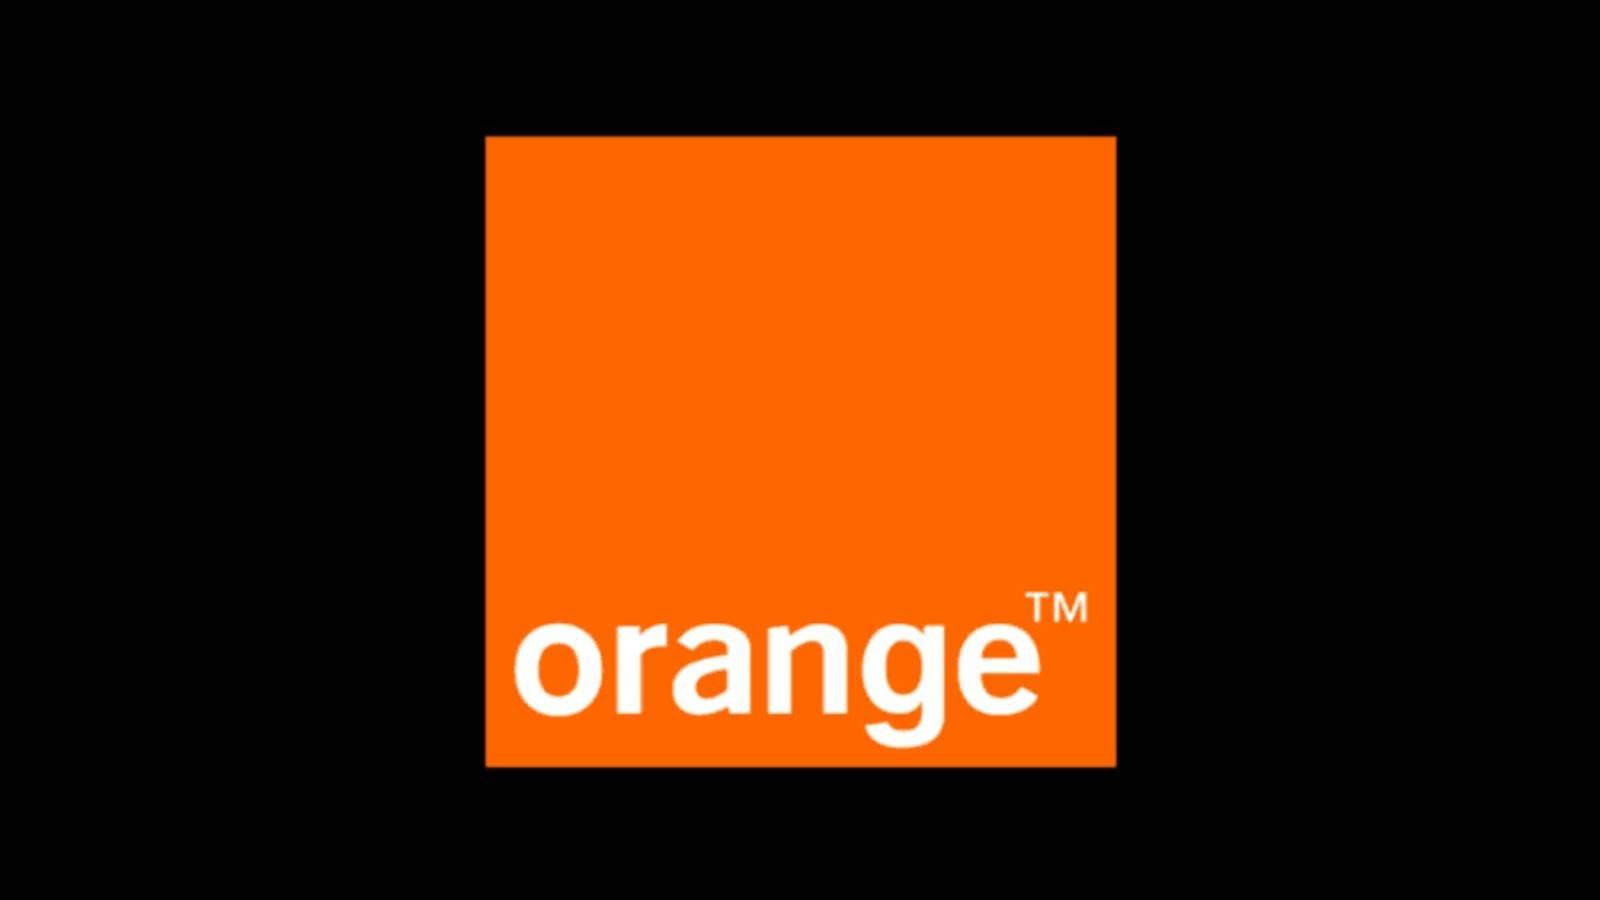 Orange vous offre des Chèques Vacances de 1.000 XNUMX euros Conditions Générales